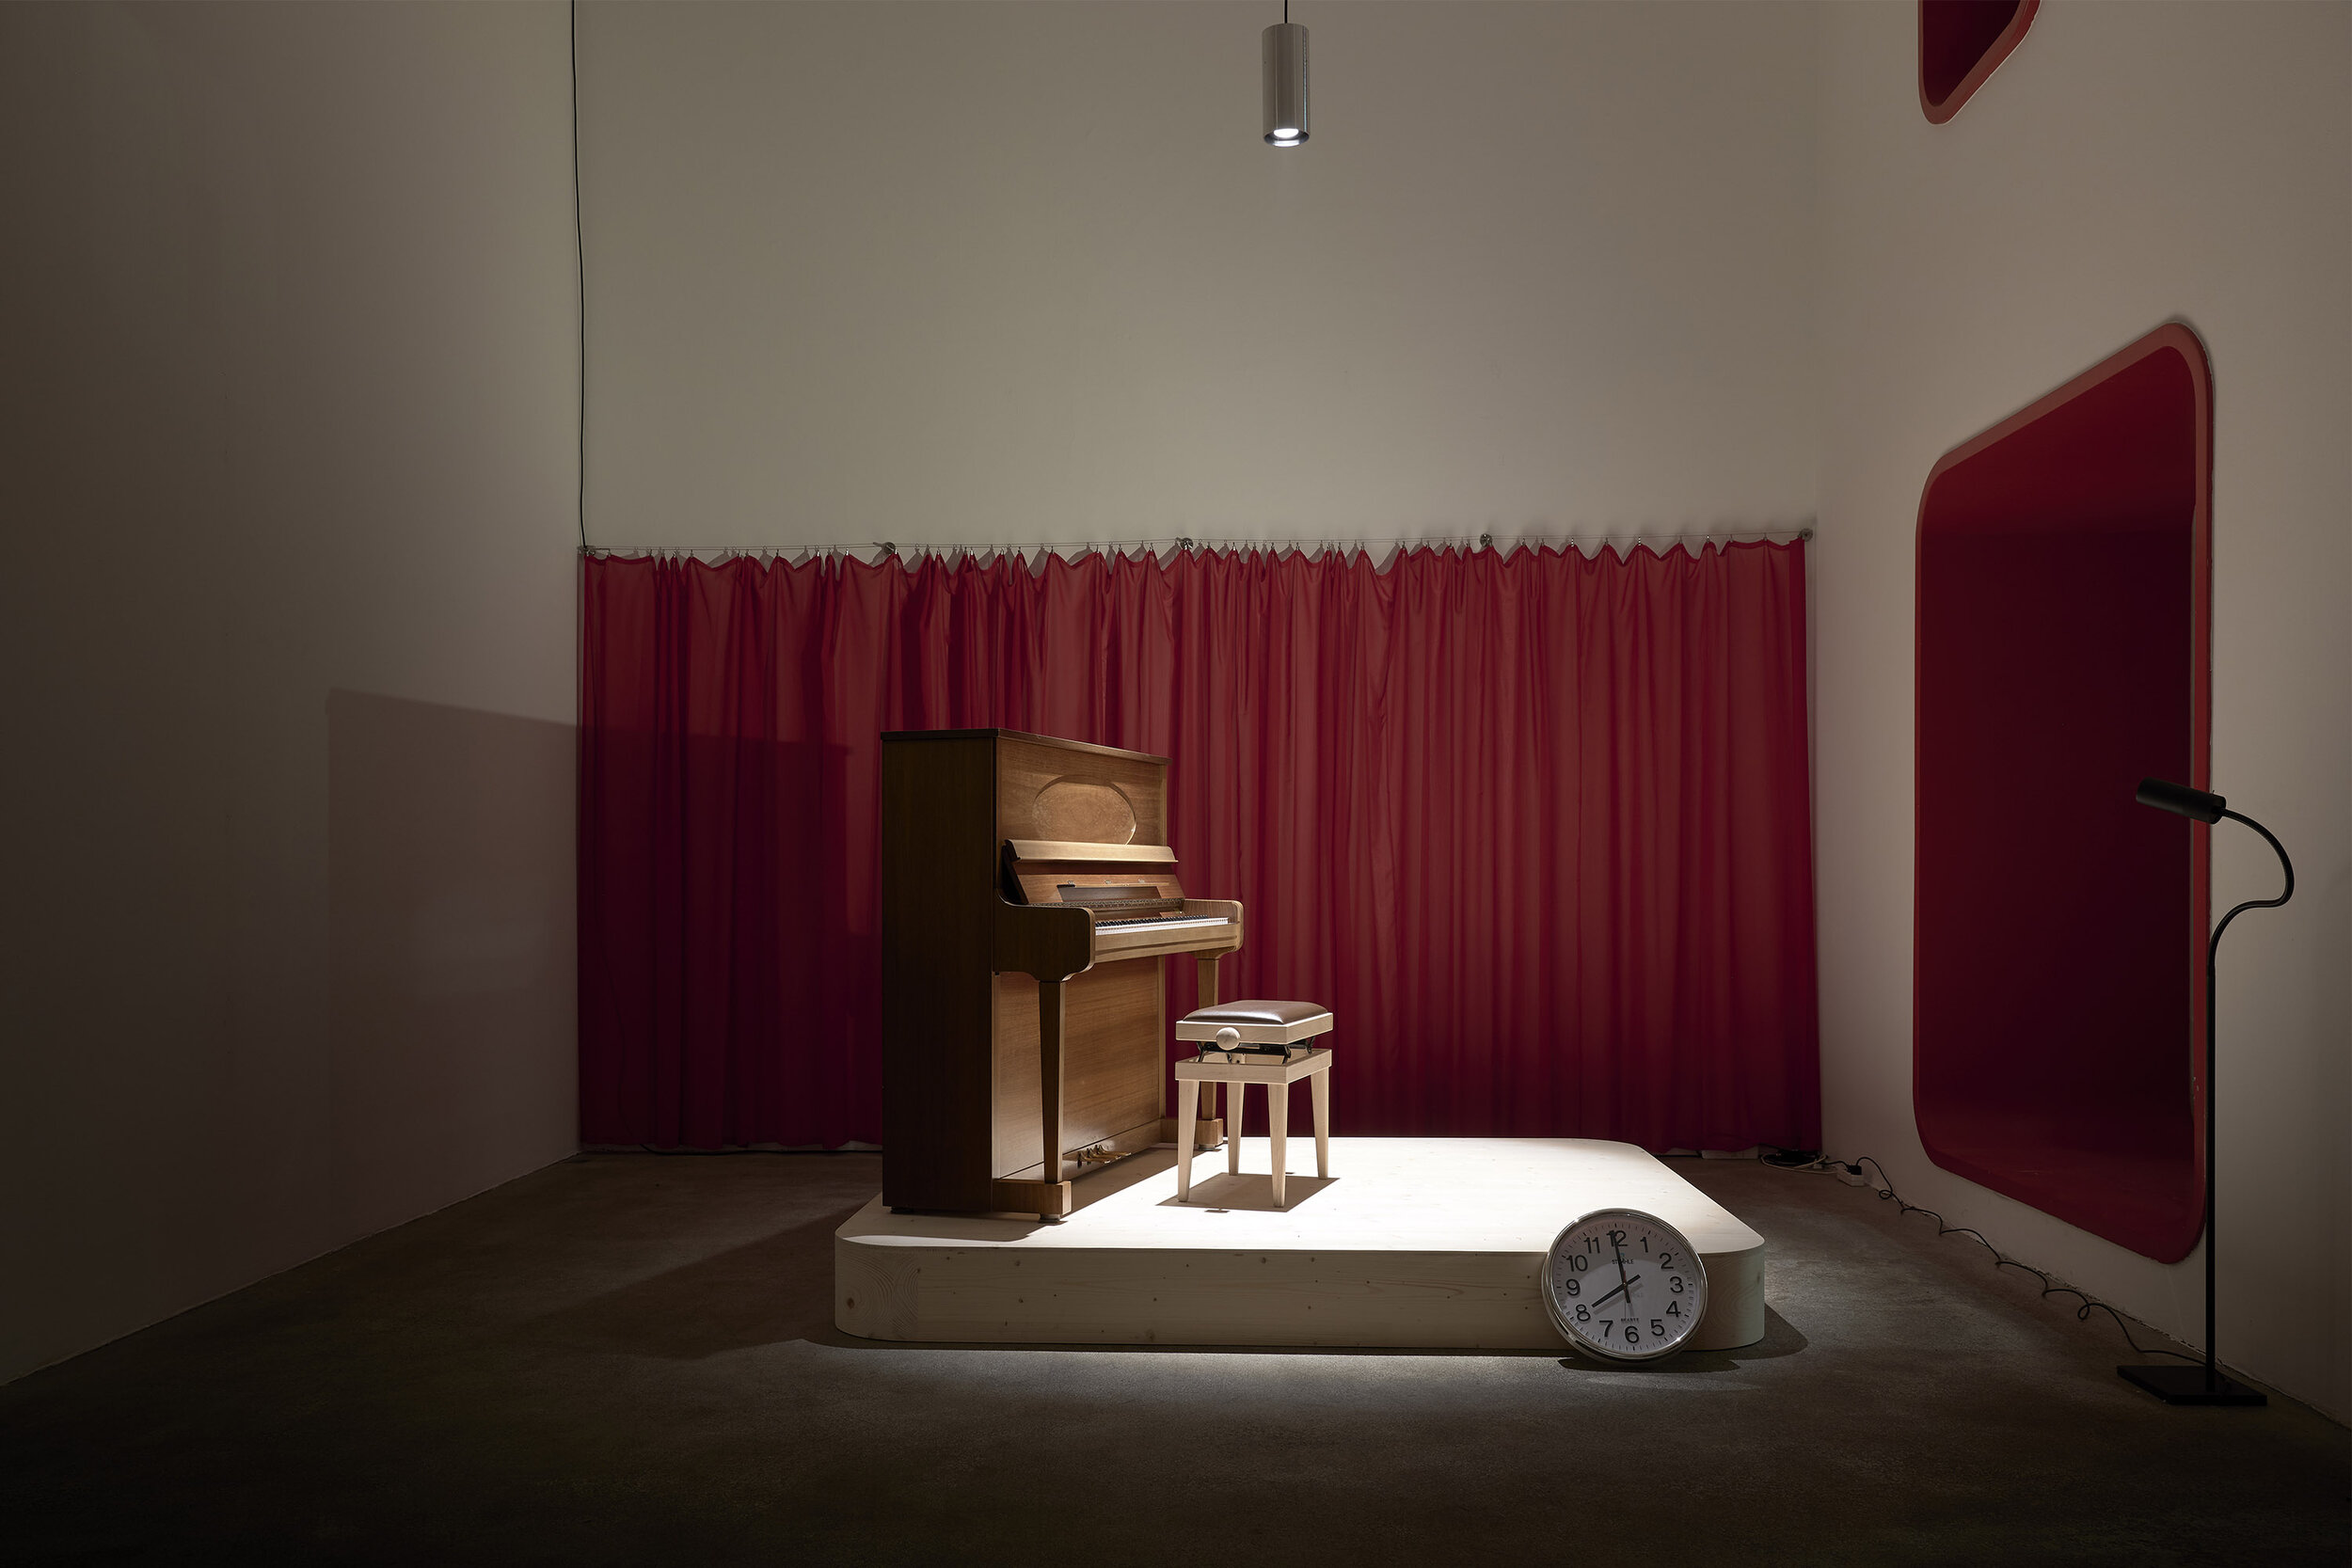 Galerie Johann Widauer-Exhibition-2019-Alfons Egger-Beatrix Sunkovsky-01B.jpg